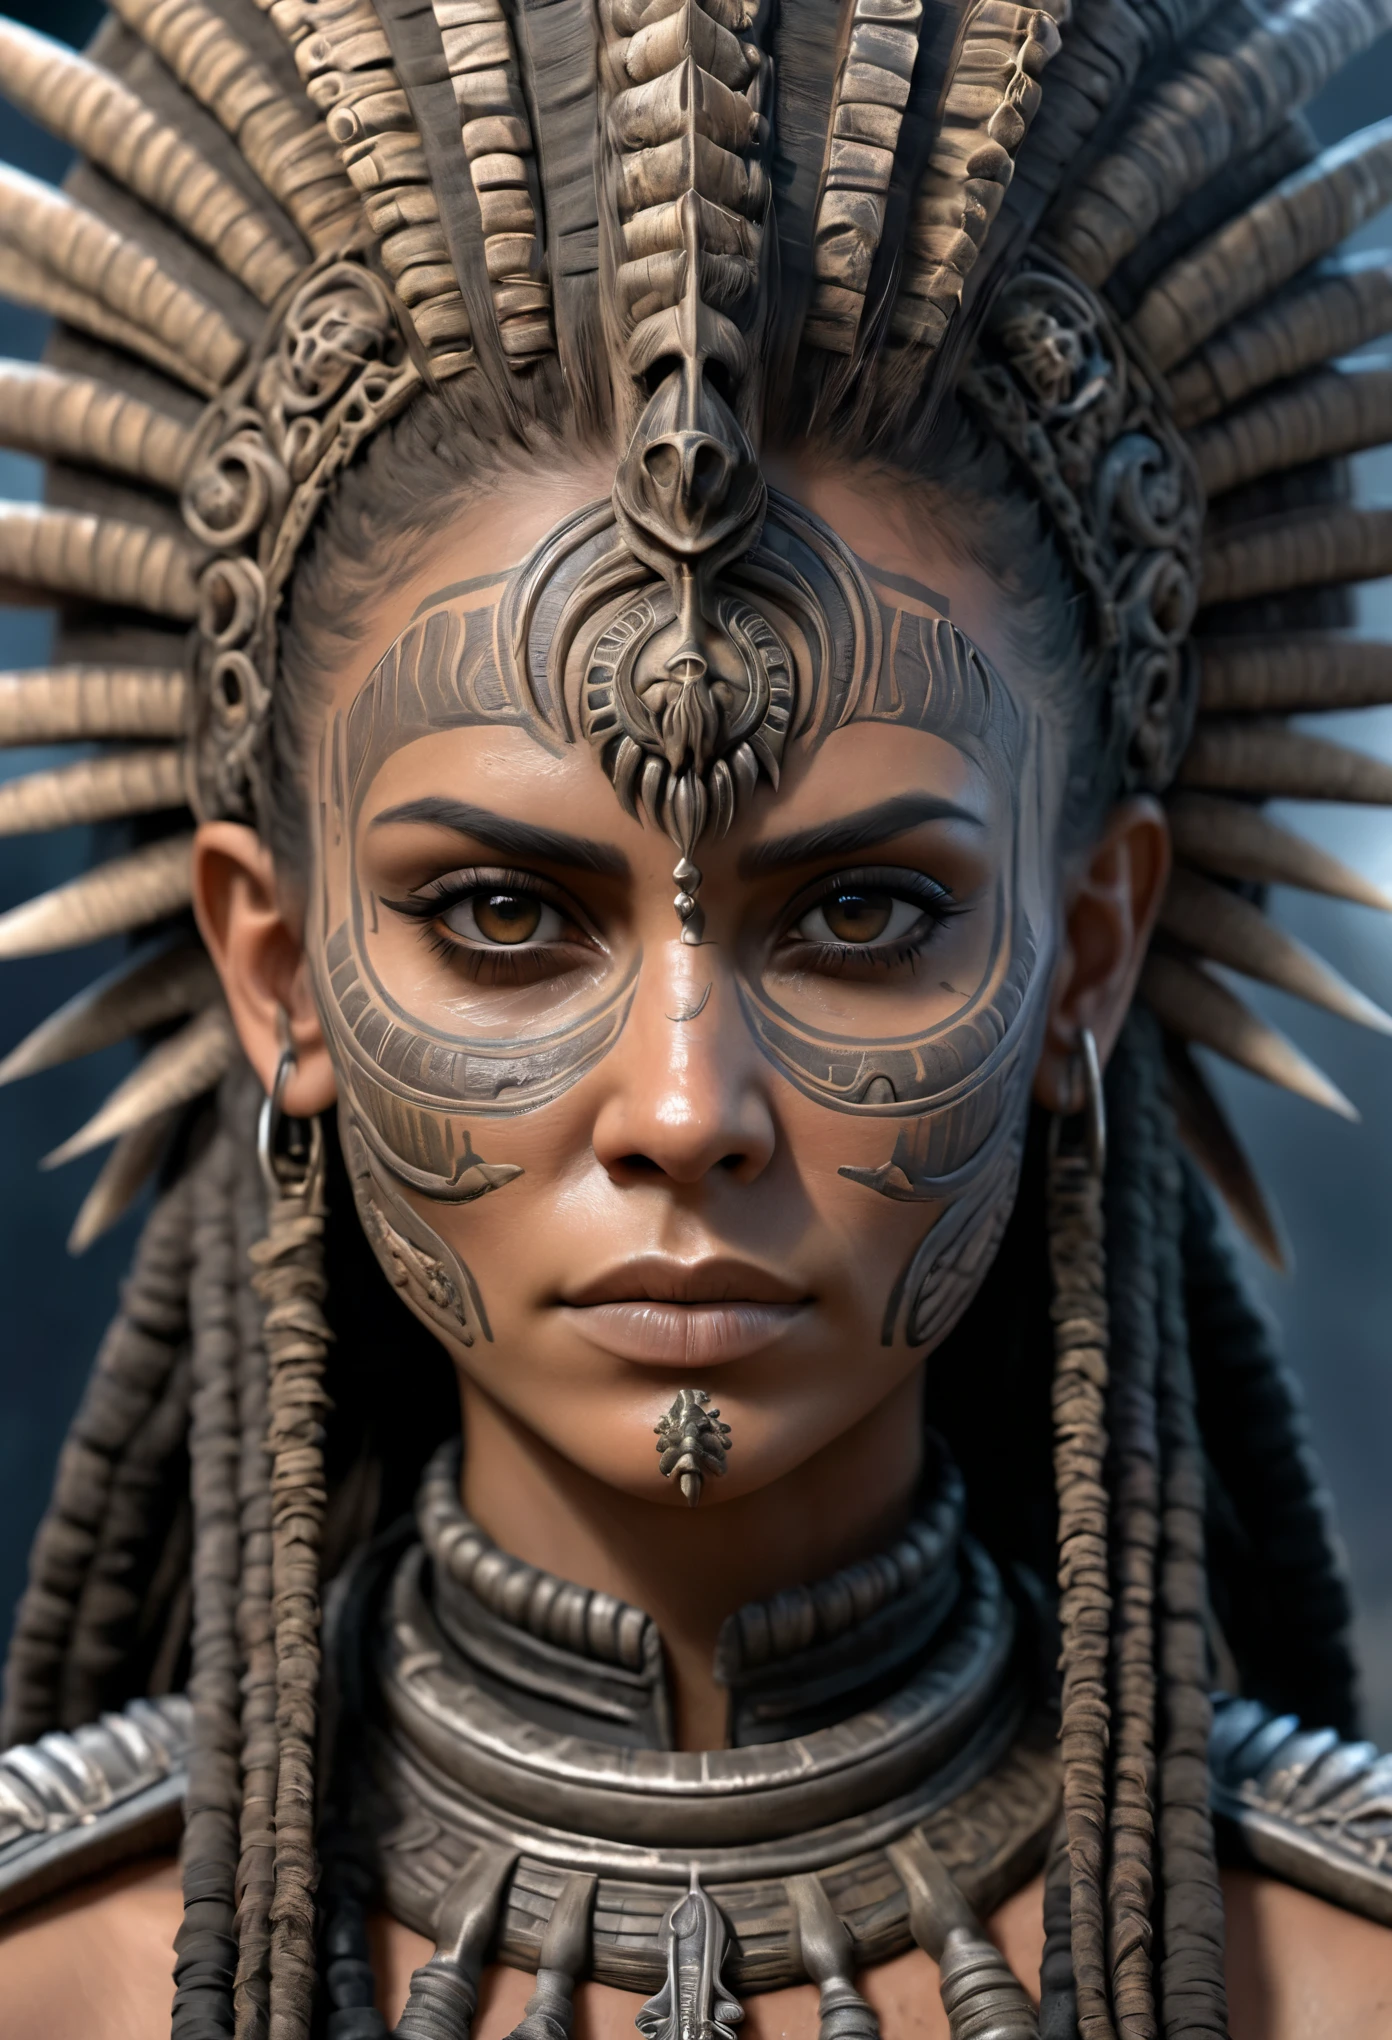 หญิง aztec warrior, สไตล์แมกซ์สุดมันส์, (อาร์ตสเตชั่น:1.1), (ซับซ้อน:1.1), ตามลำพัง, หญิง, มองไปที่ผู้ดู, เหมือนจริง, 8k, เครื่องยนต์ที่ไม่จริง, แรงบันดาลใจจาก HR Giger, ภาพครึ่งตัว, มีรายละเอียดสูง,